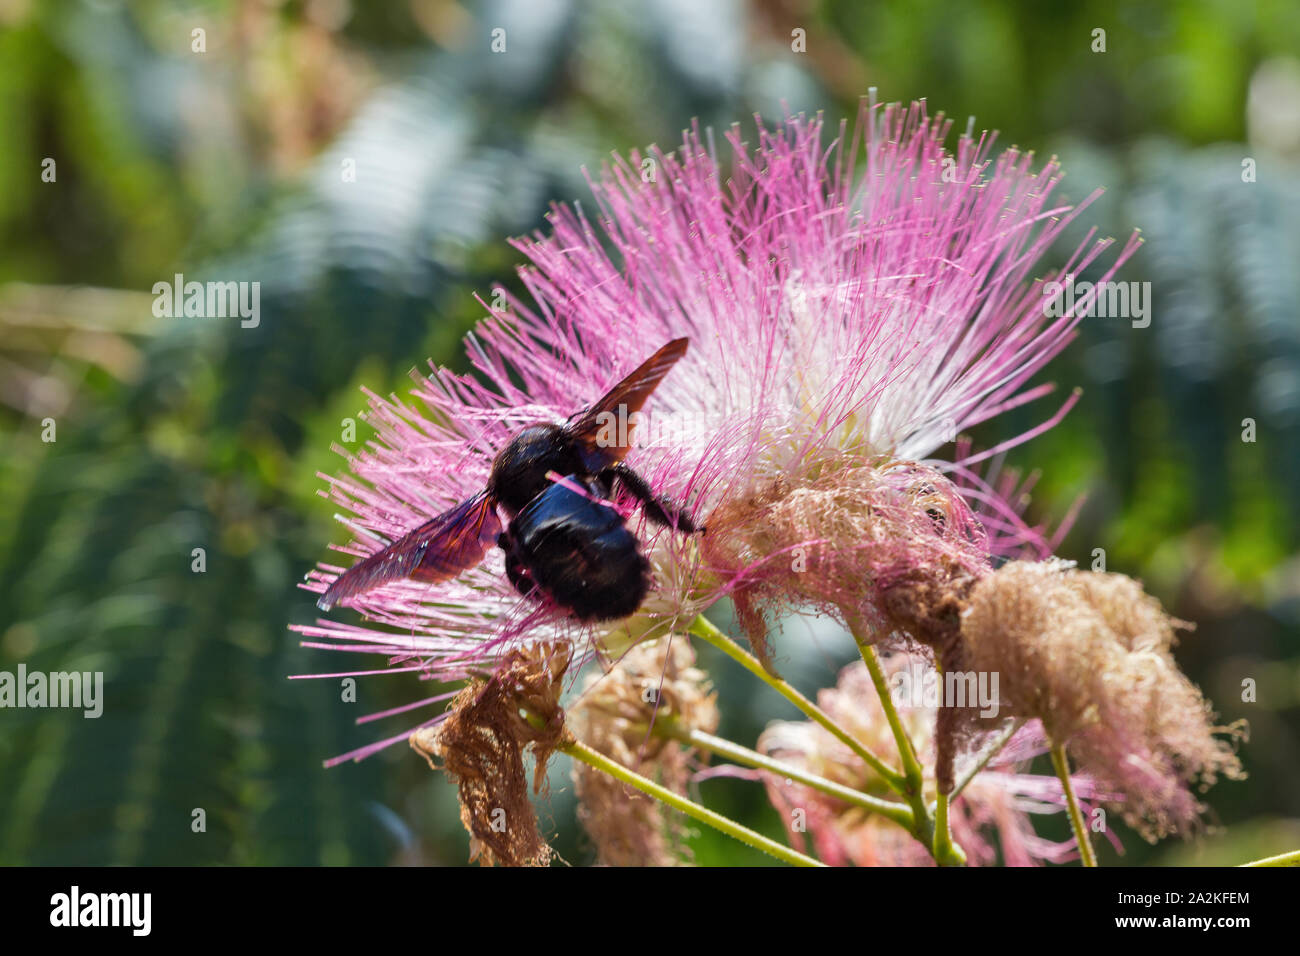 Blühende Albizia julibrissin rosa Blume mit großen schwarzen Hummel auf der Insel Korsika, Frankreich. Albizia julibrissin ist als lenkoran Akazie bekannt als Stockfoto